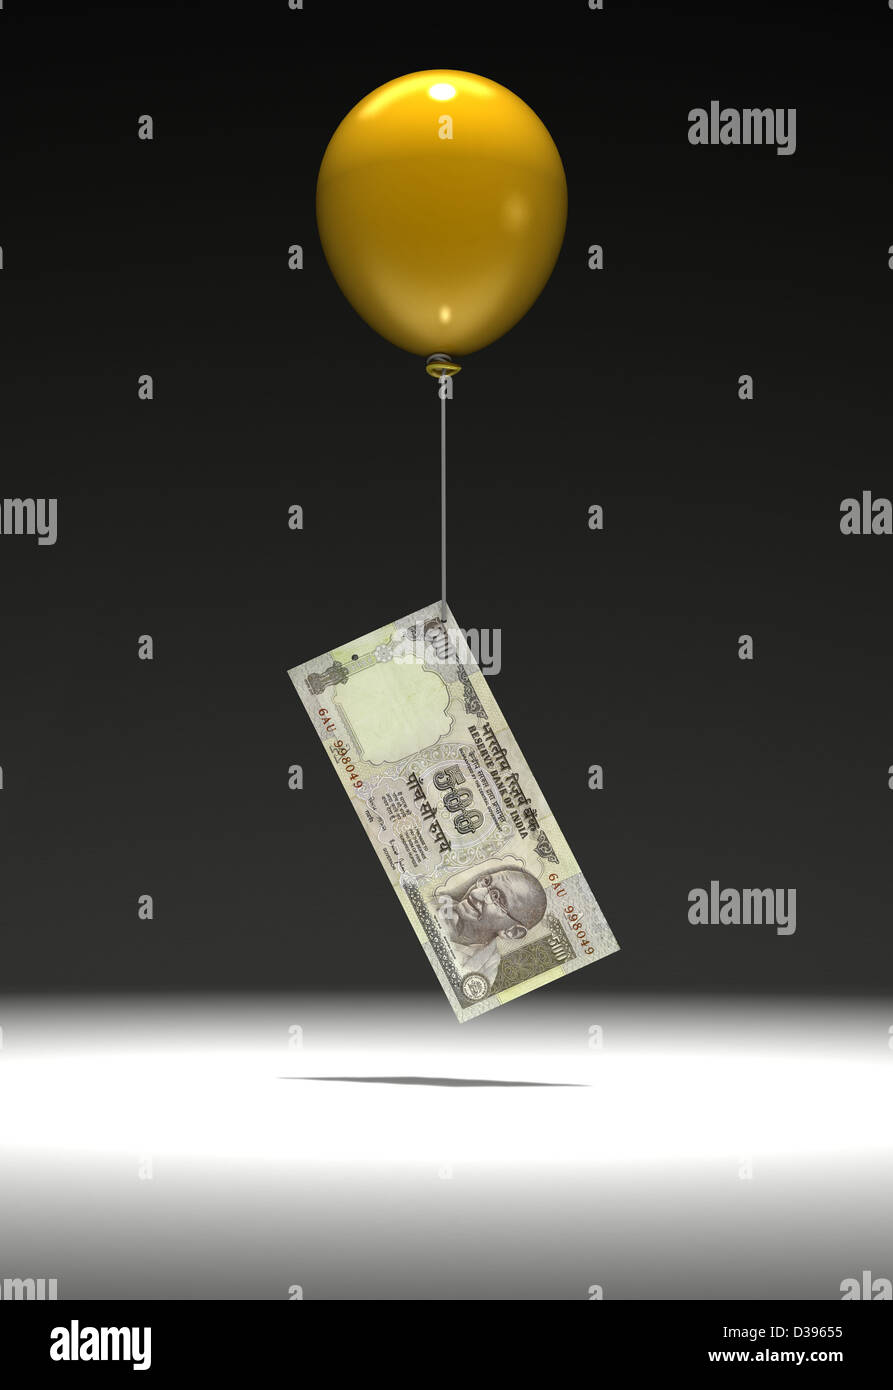 Fünfhundert indischen Rupie Hinweis aufgehoben wird, mit einem Ballon Stockfoto